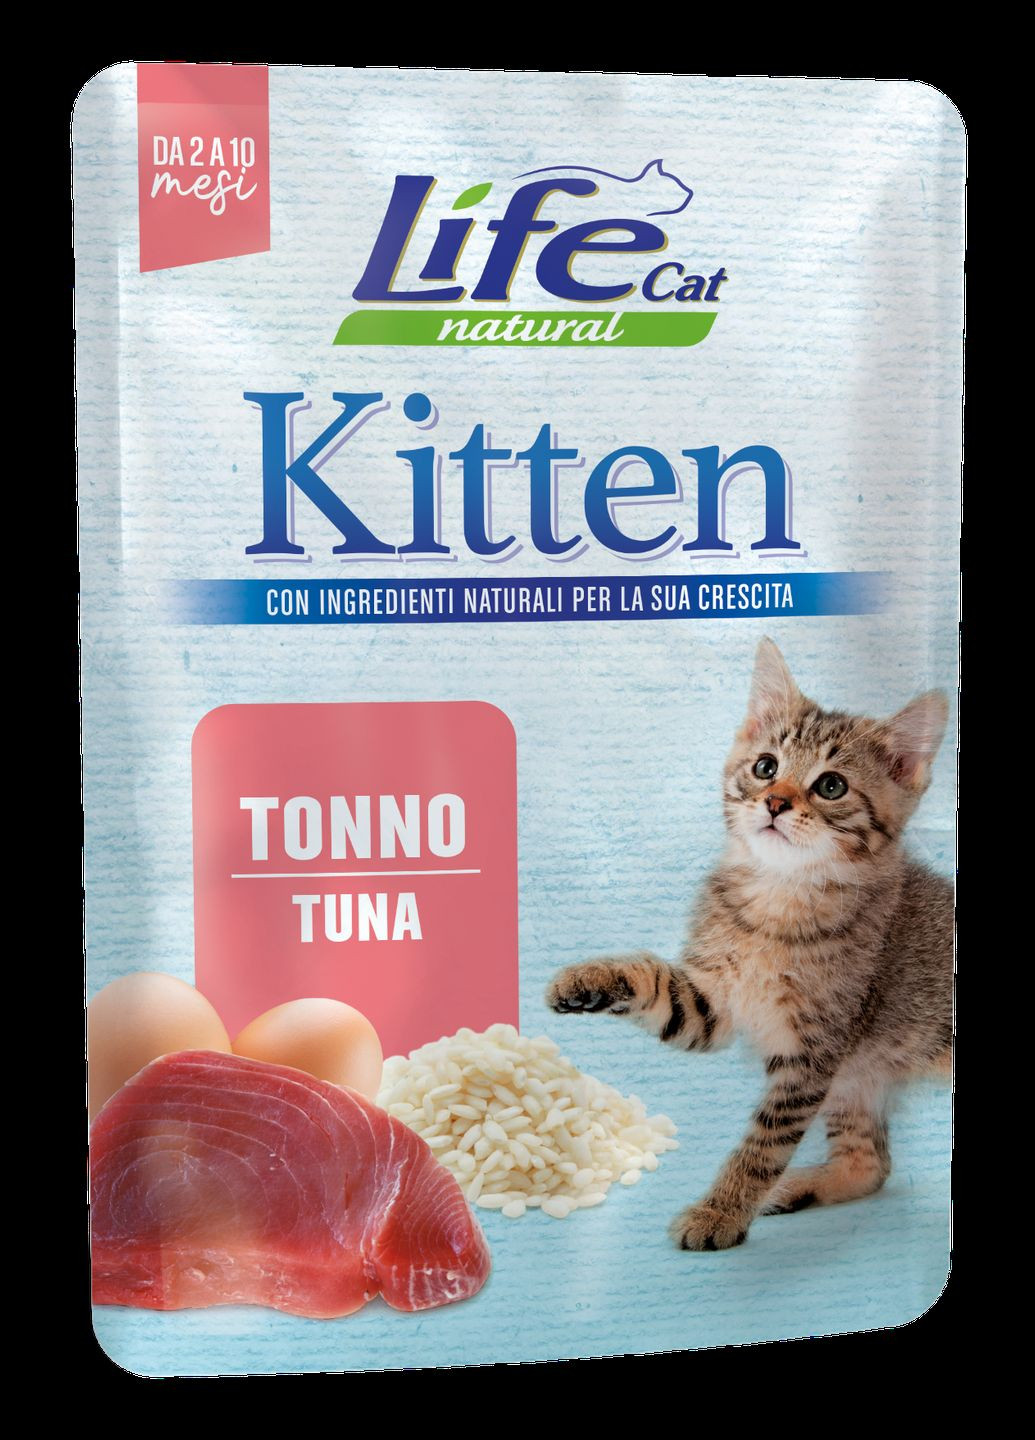 Консерва Kitten Tuna для котят со вкусом тунца, 70 г 423848 LifeCat (275797397)